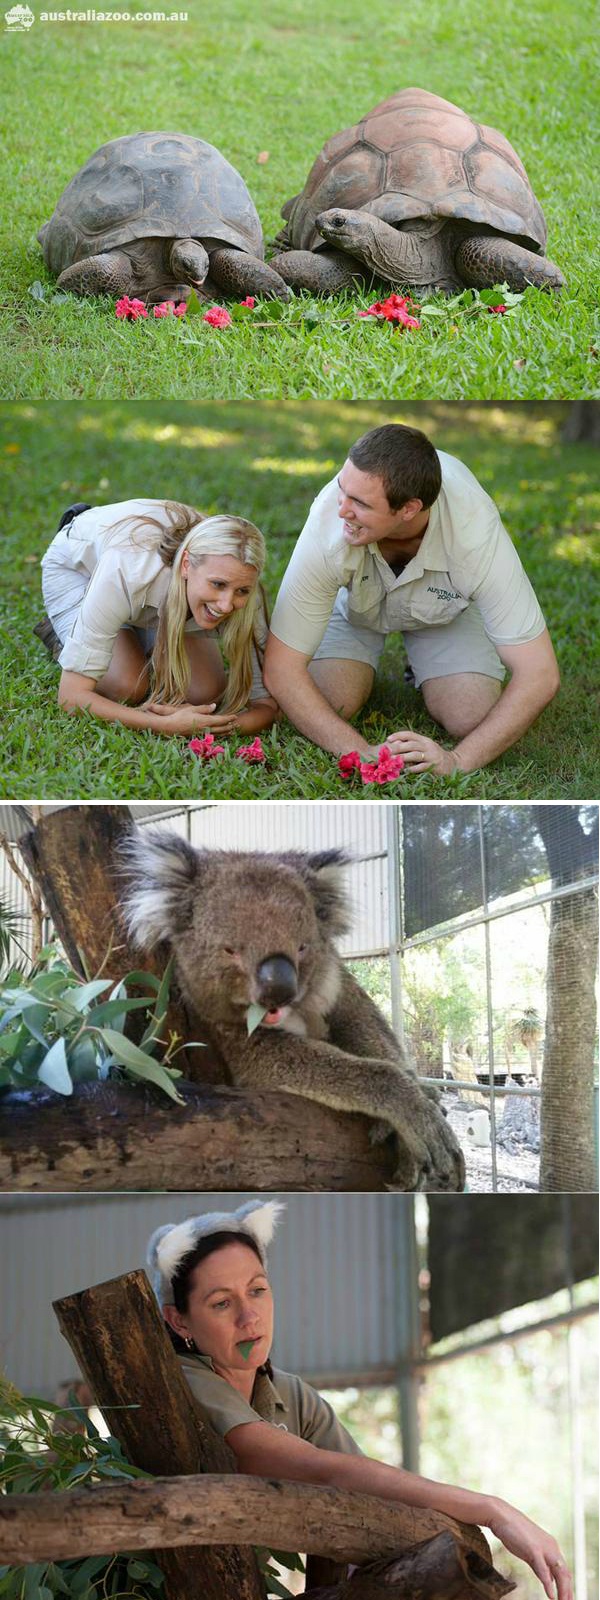 澳大利亚饲养员模仿动物大赛